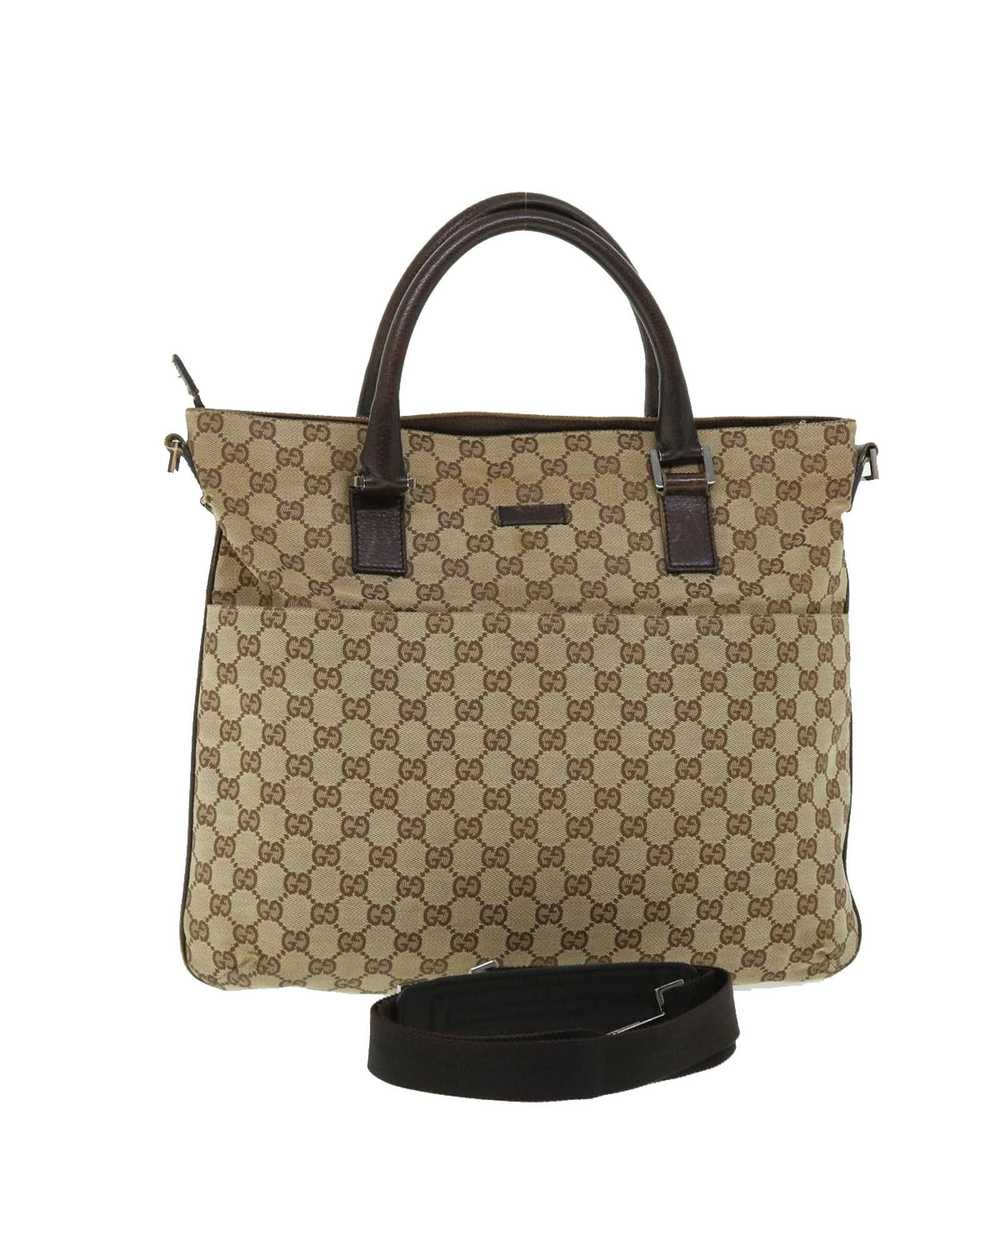 Gucci Beige Canvas Shoulder Bag with GG Design - image 1